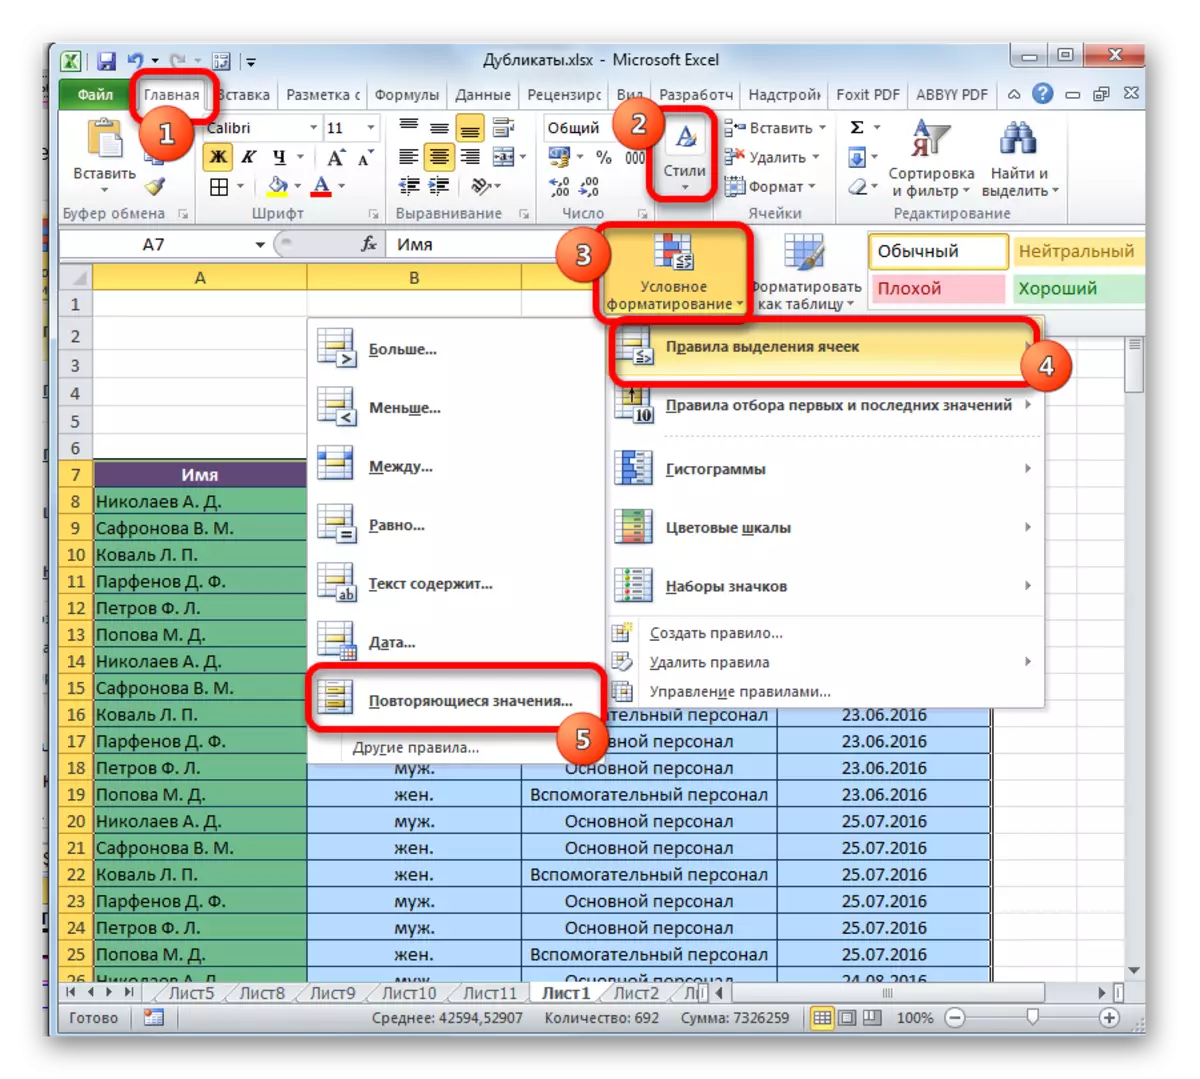 Transisi ka format préparasi dina Microsoft Excel